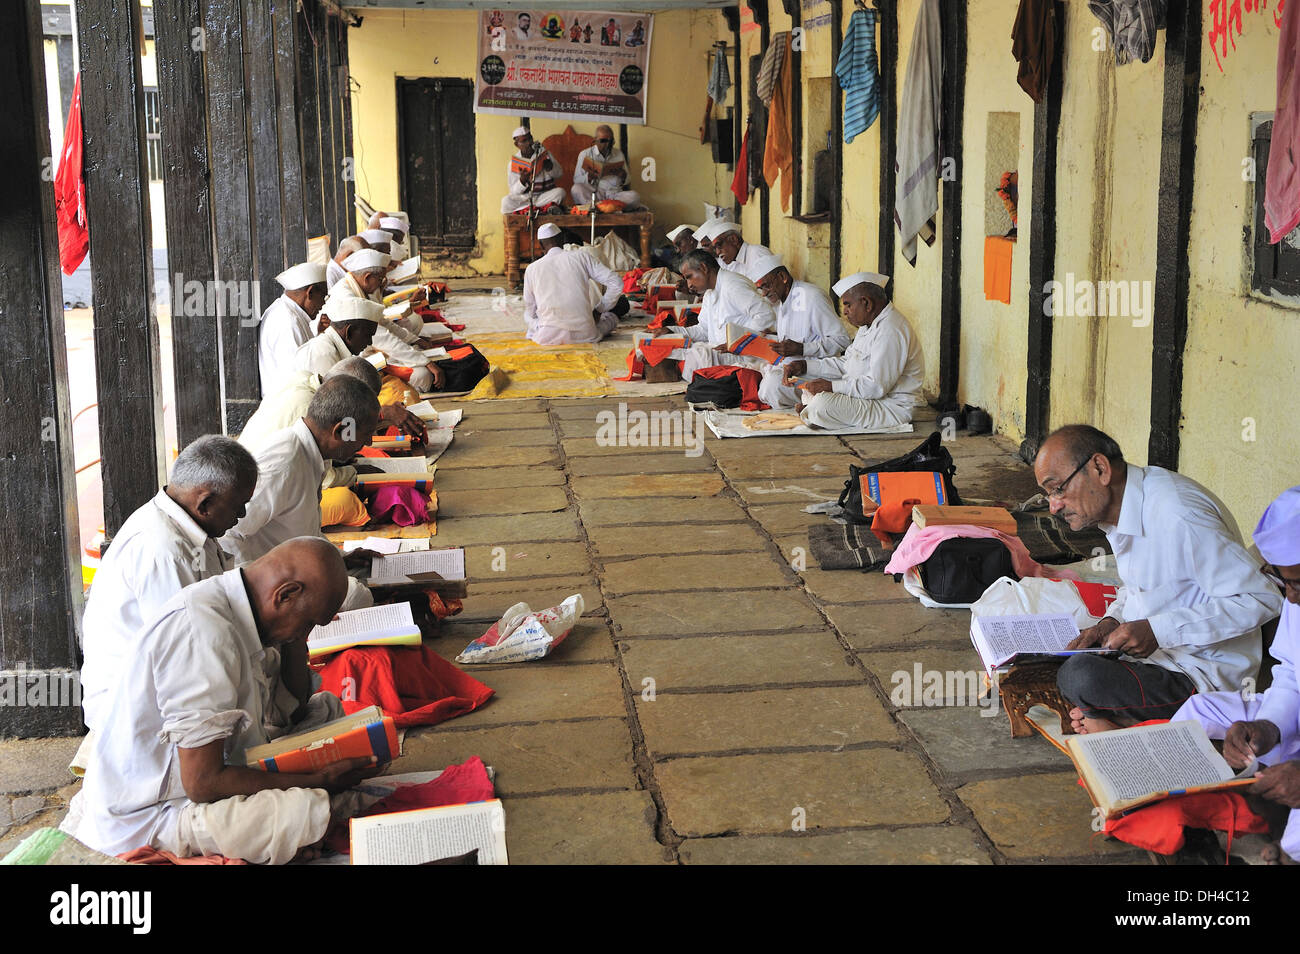 Lesen von Heiligen Büchern im Tempel Galerie Paithan Aurangabad Maharashtra Indien Asien Stockfoto